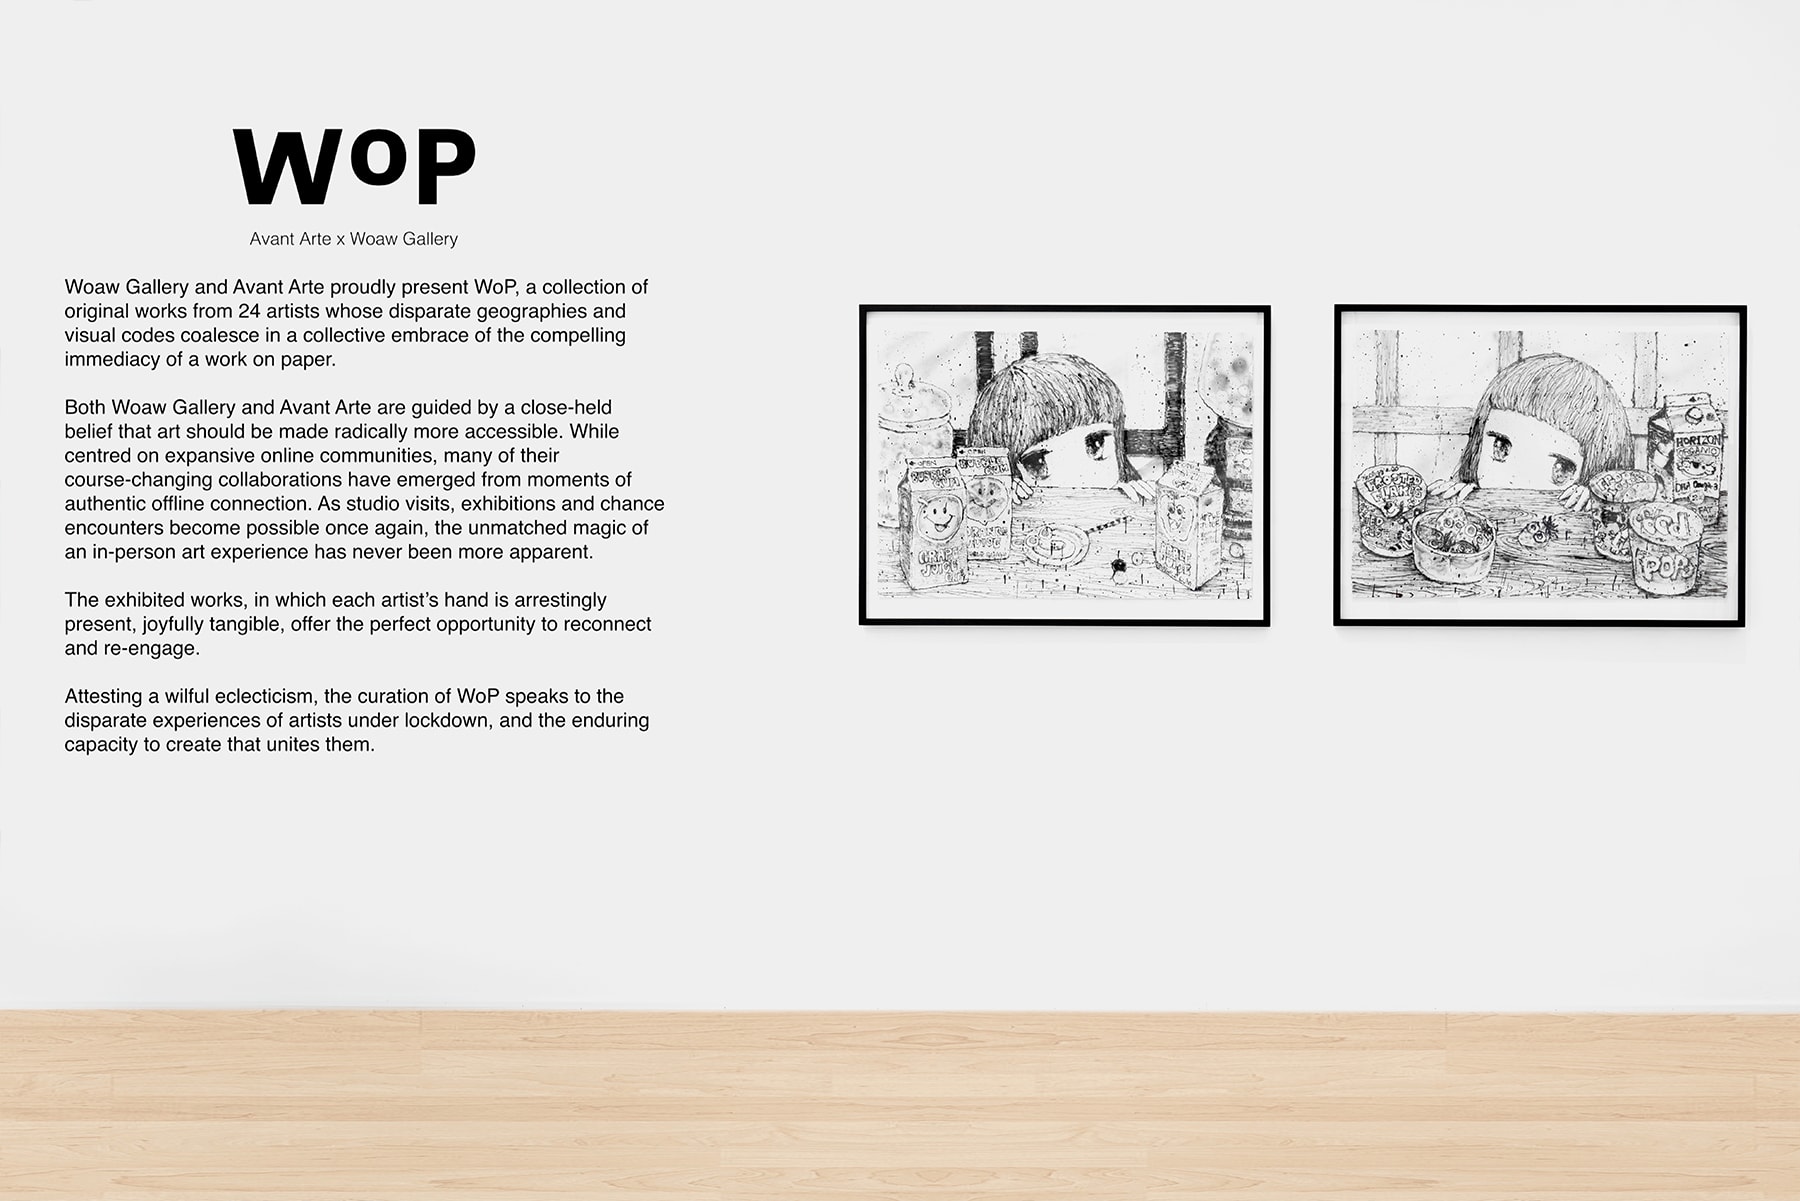 WOAW Gallery Avant Arte Presents WoP exhibition